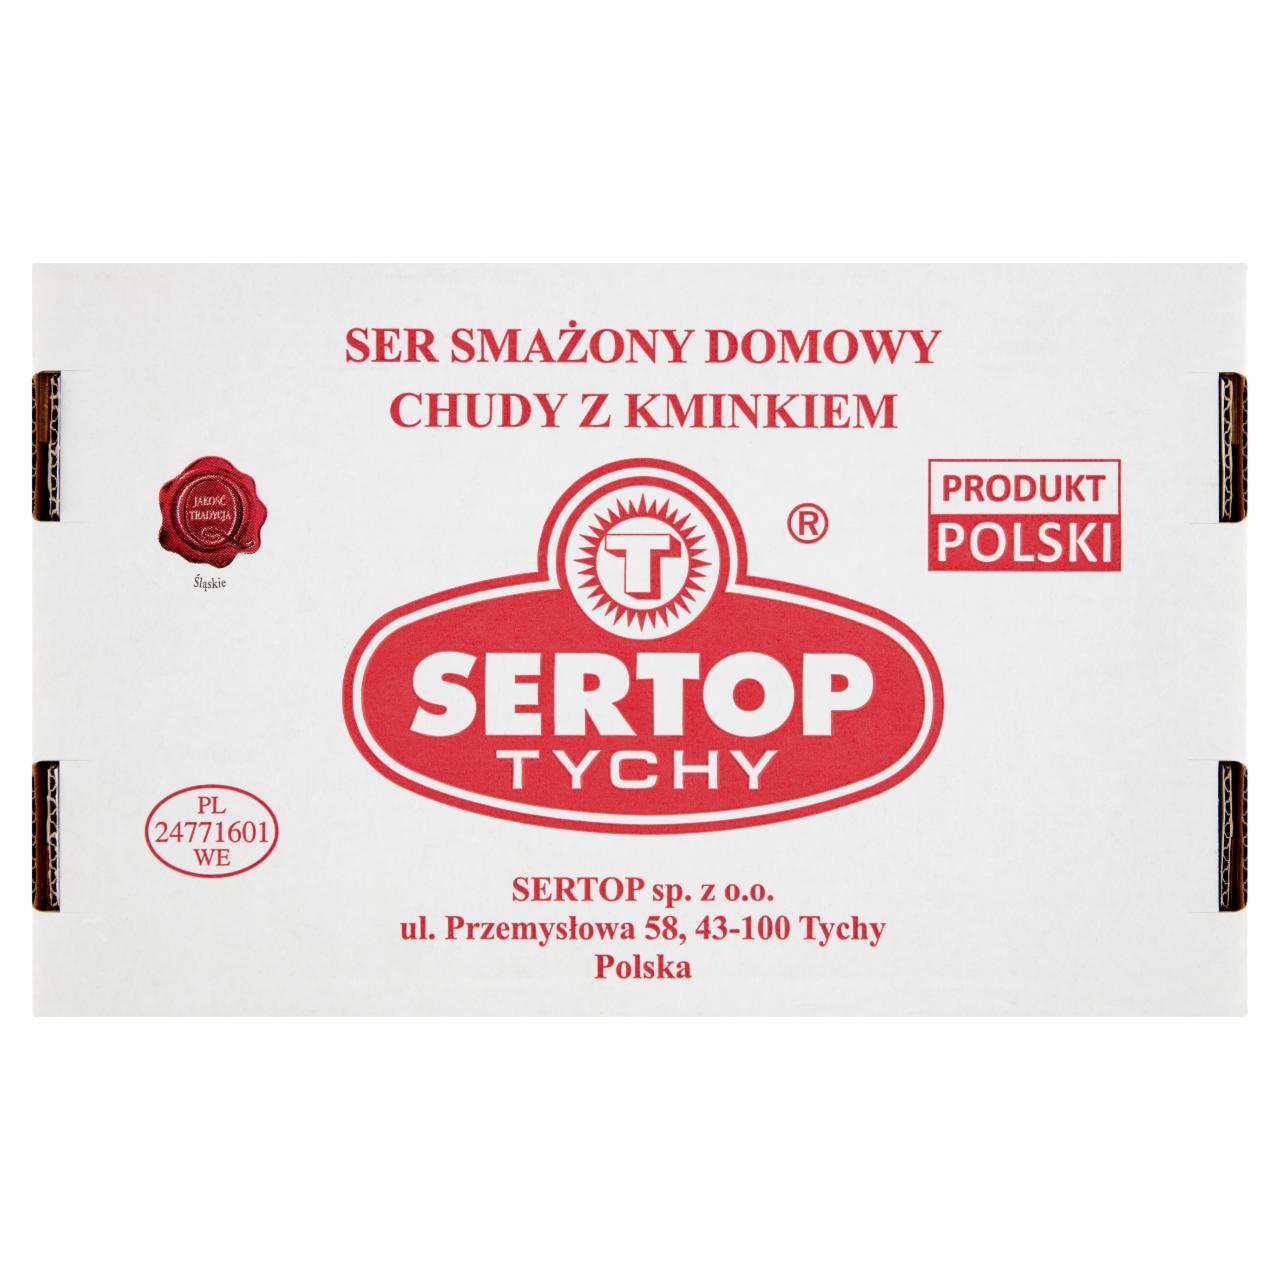 Zdjęcia - Sertop Tychy Ser smażony domowy chudy z kminkiem 2 kg